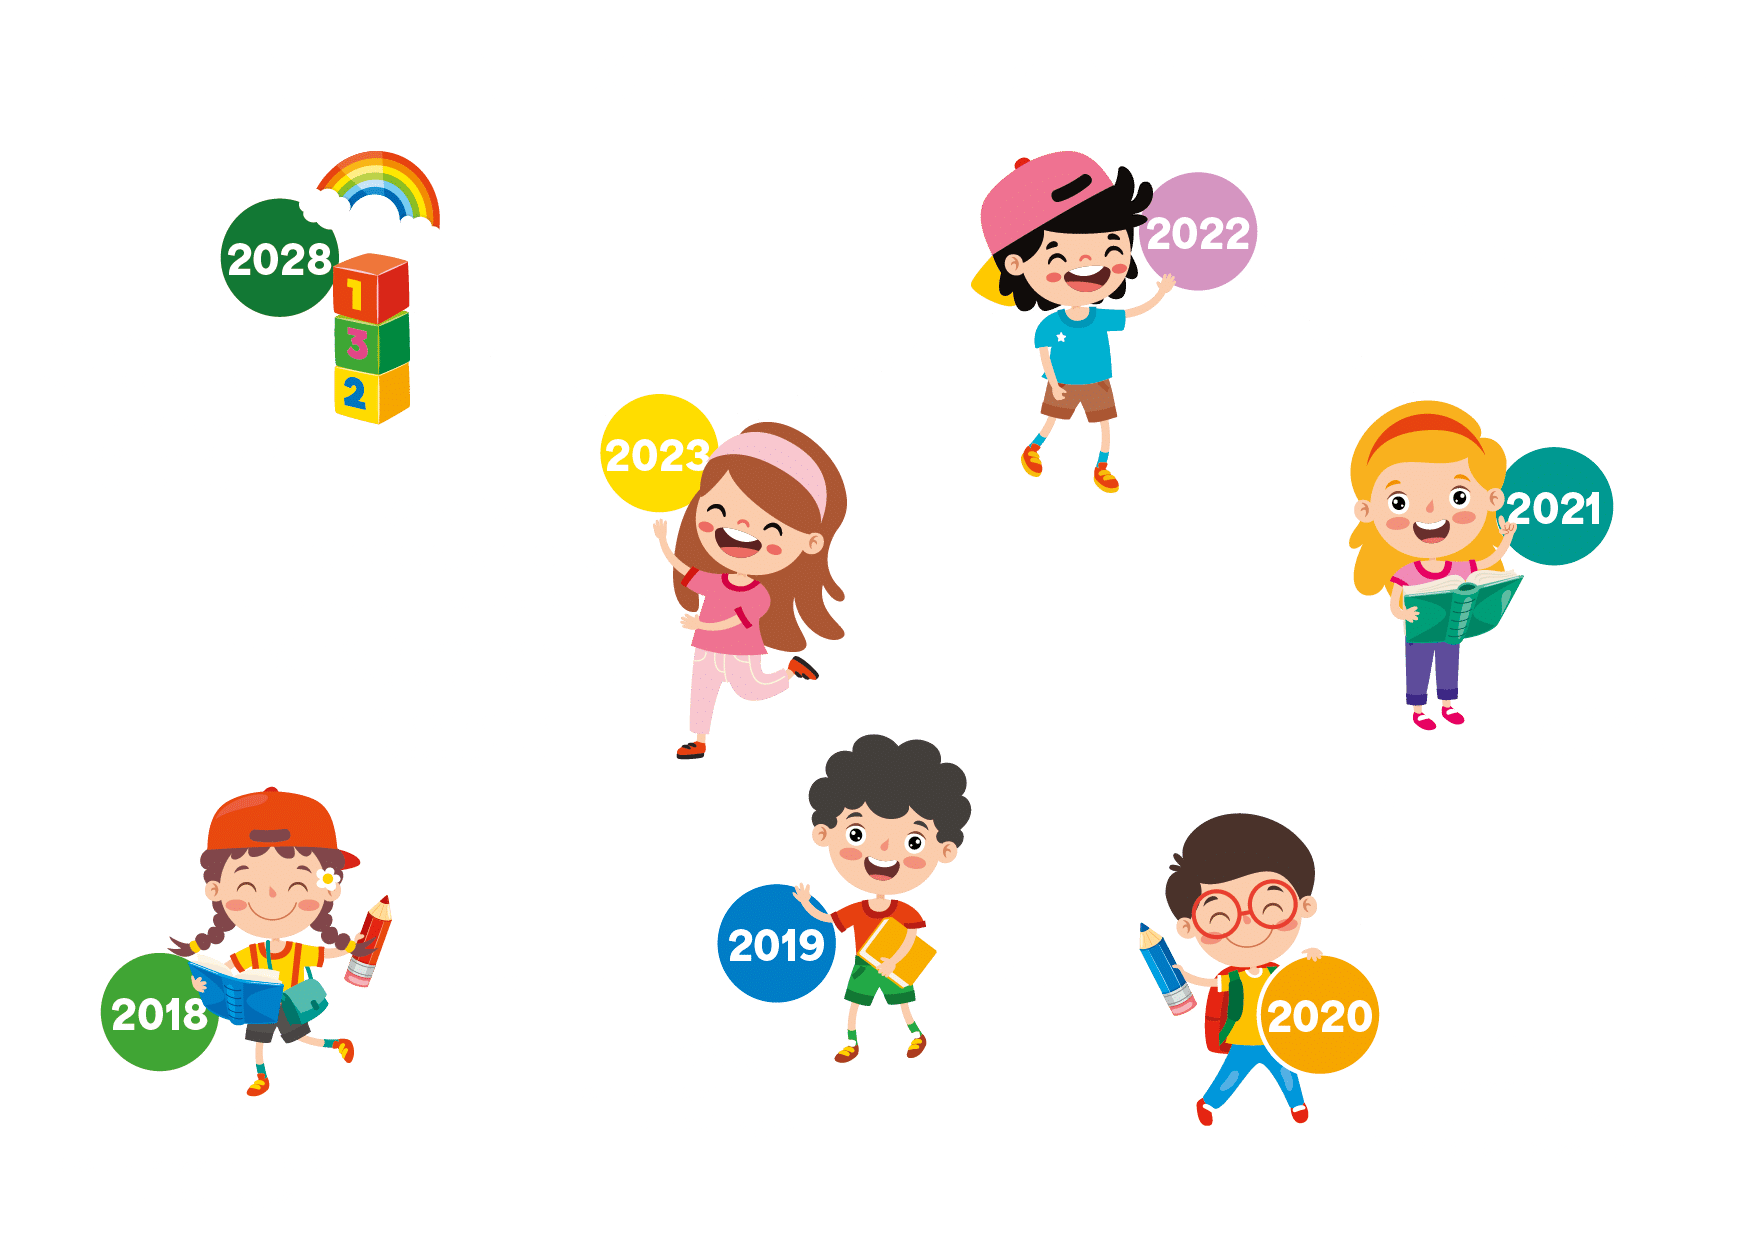 Gratis Kindergarten in Kärnten